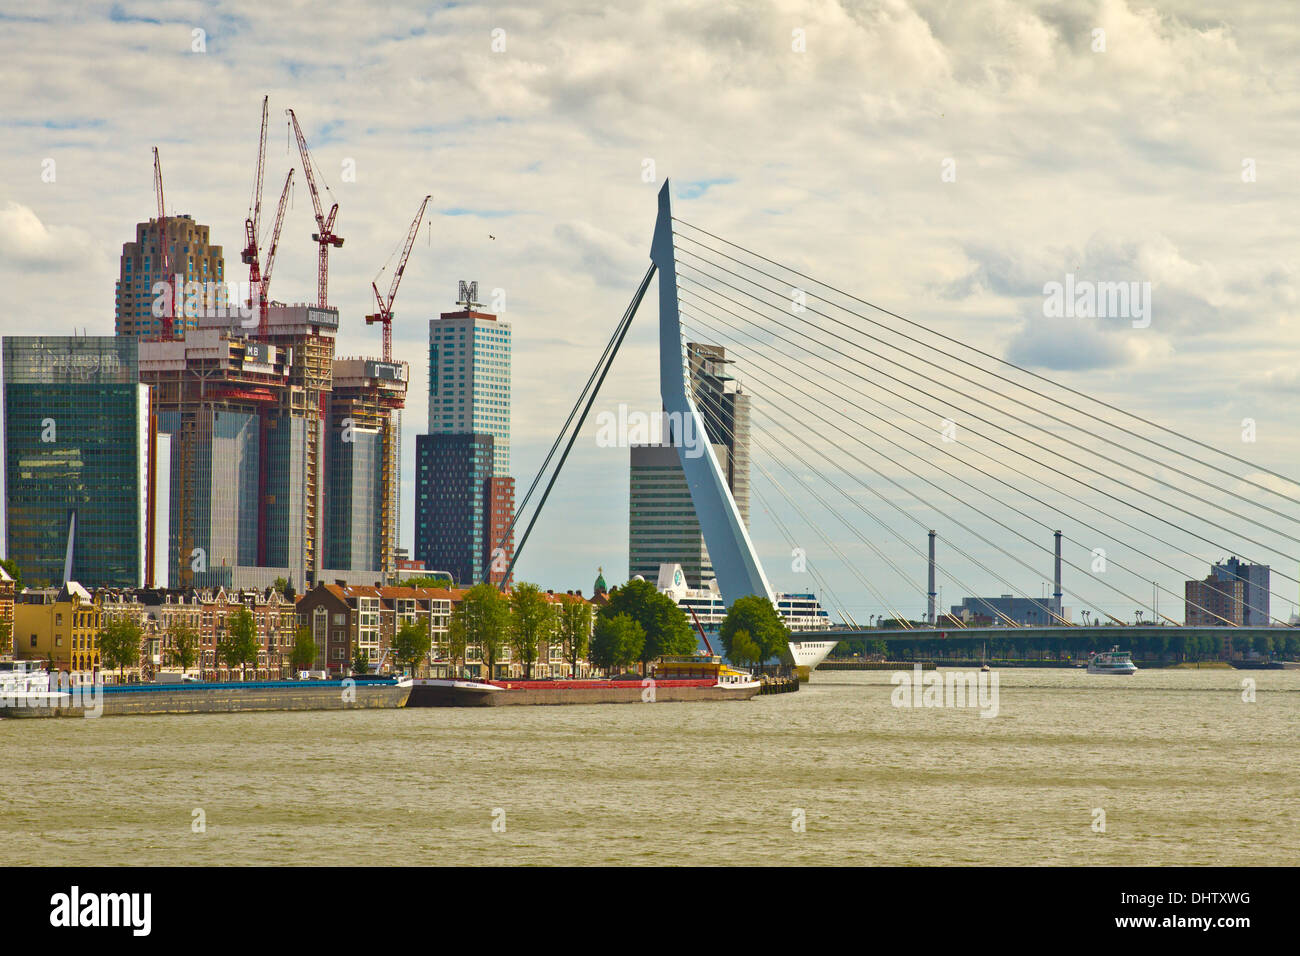 Rotterdam and the Erasmus Bridge Stock Photo